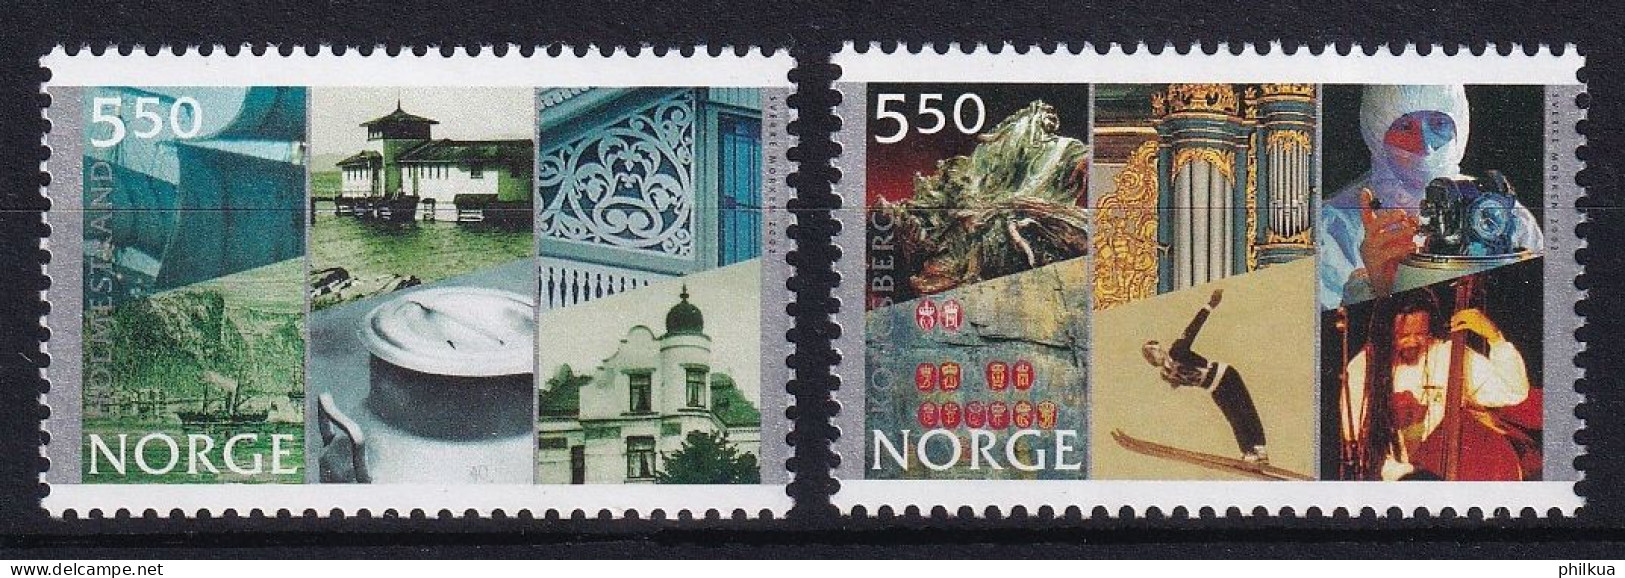 MiNr. 1436 - 1437 Norwegen 2002, 5. Juni. 250 Jahre Stadt Holmestrand, 200 Jahre Stadt Kongsberg - Postfrisch/**/MNH - Neufs